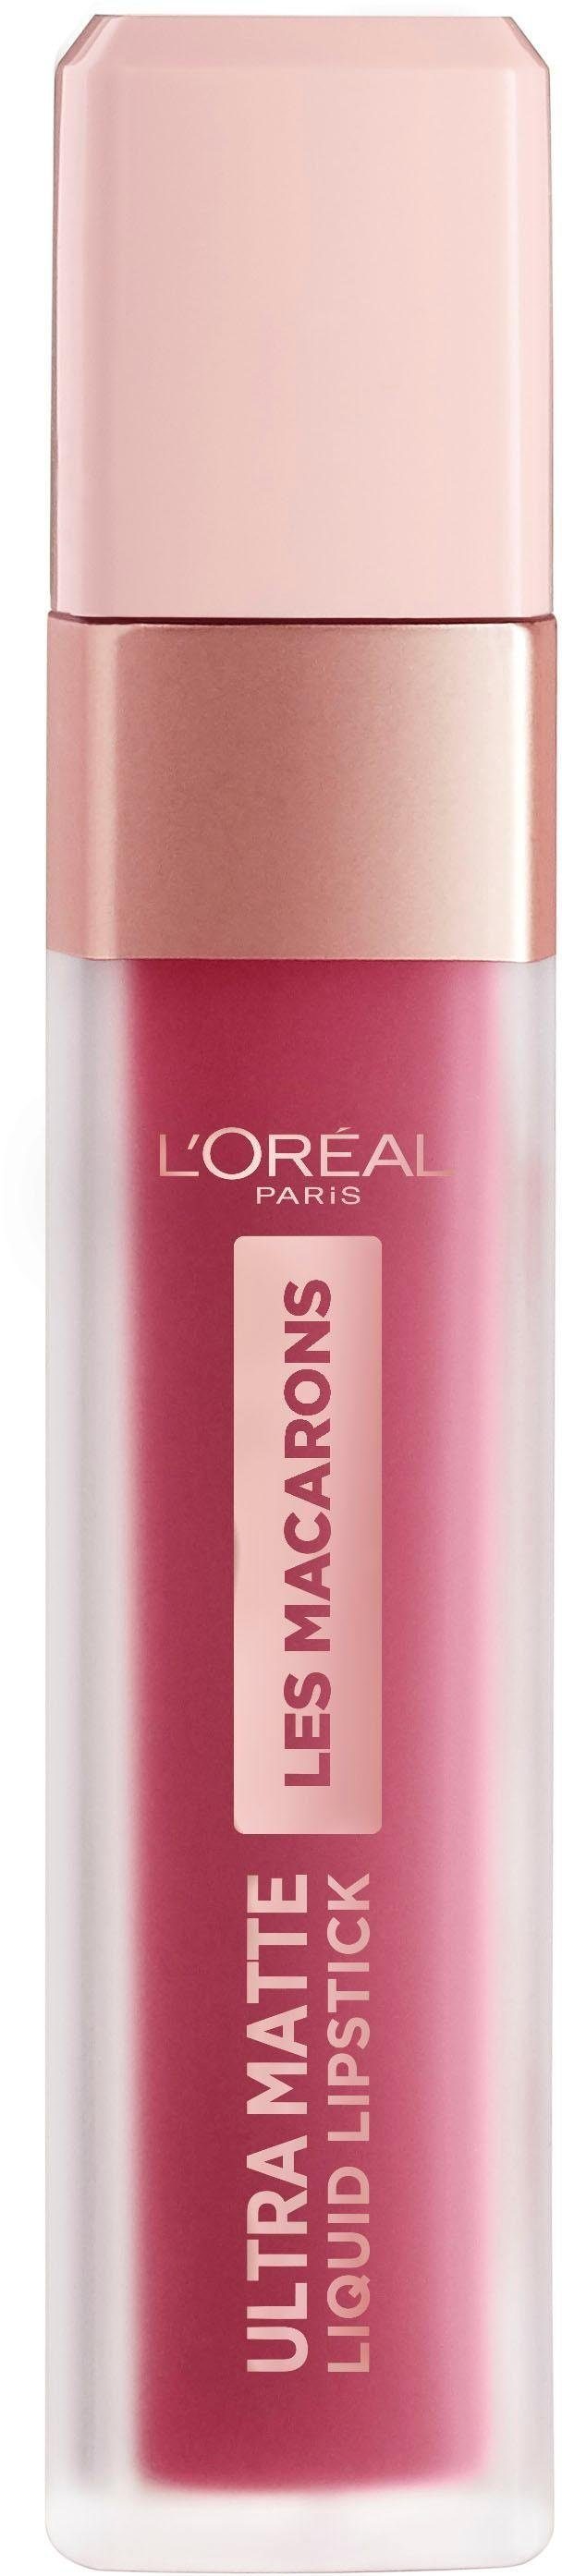 L'ORÉAL PARIS Les Ultra-Matte de Paris Praline Macarons Infaillible 820 Lippenstift